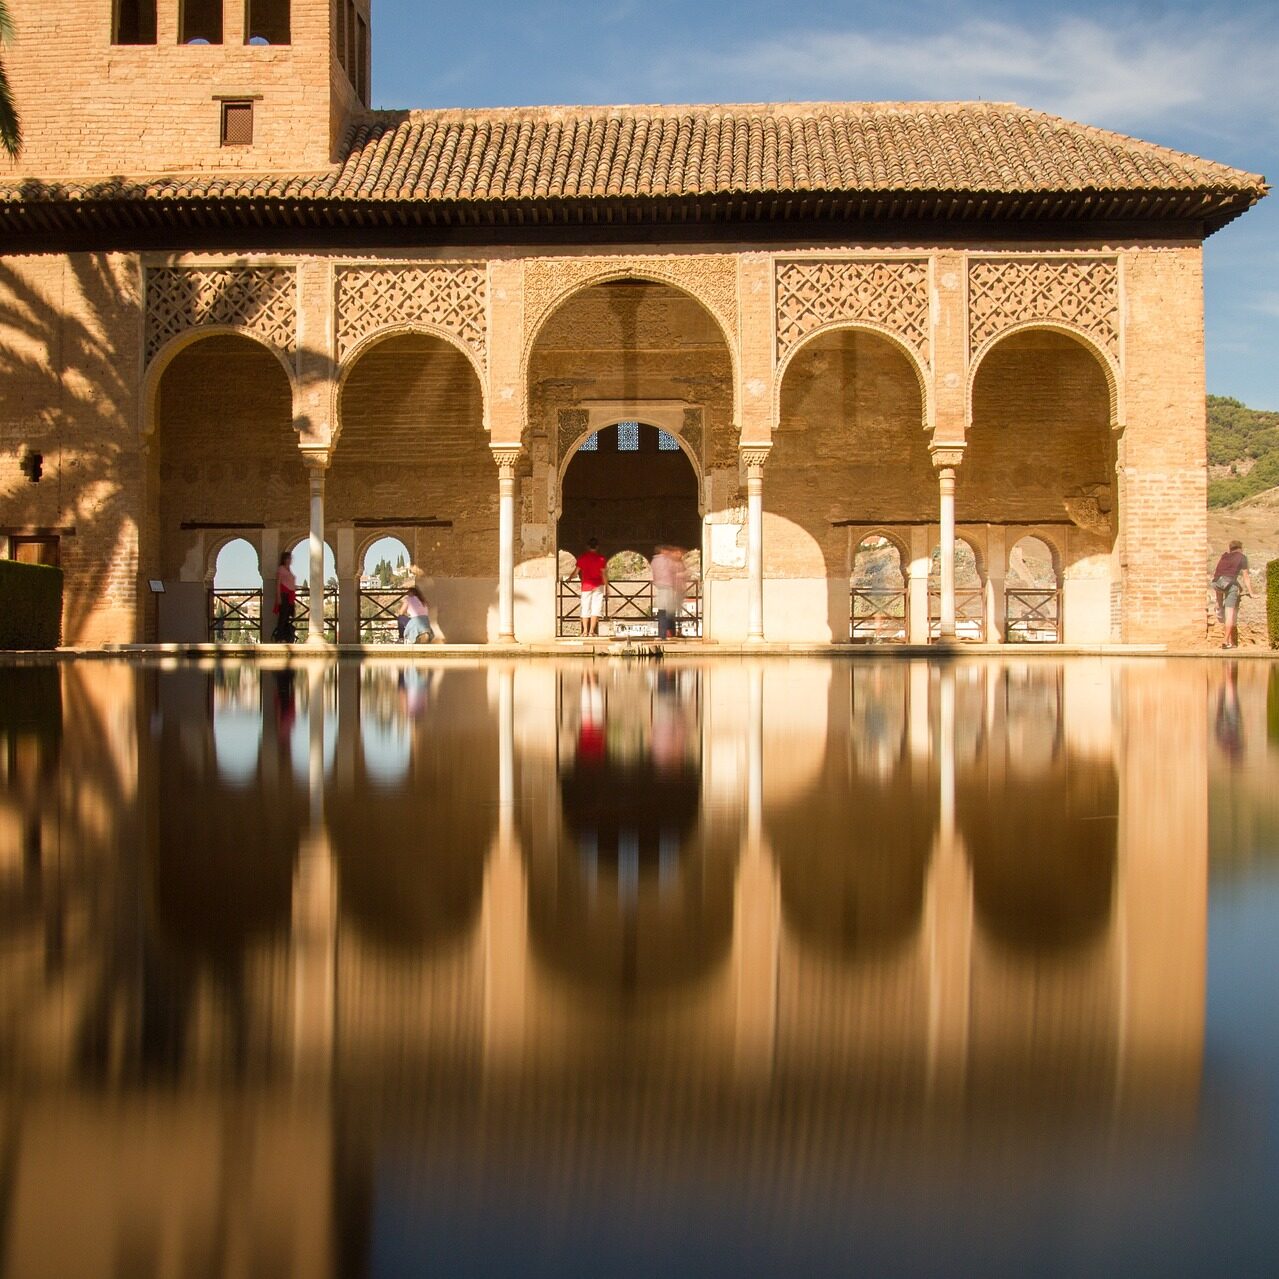 Venta de tickets Alhambra, Palacios Nazaries, Generalife y Alcazaba